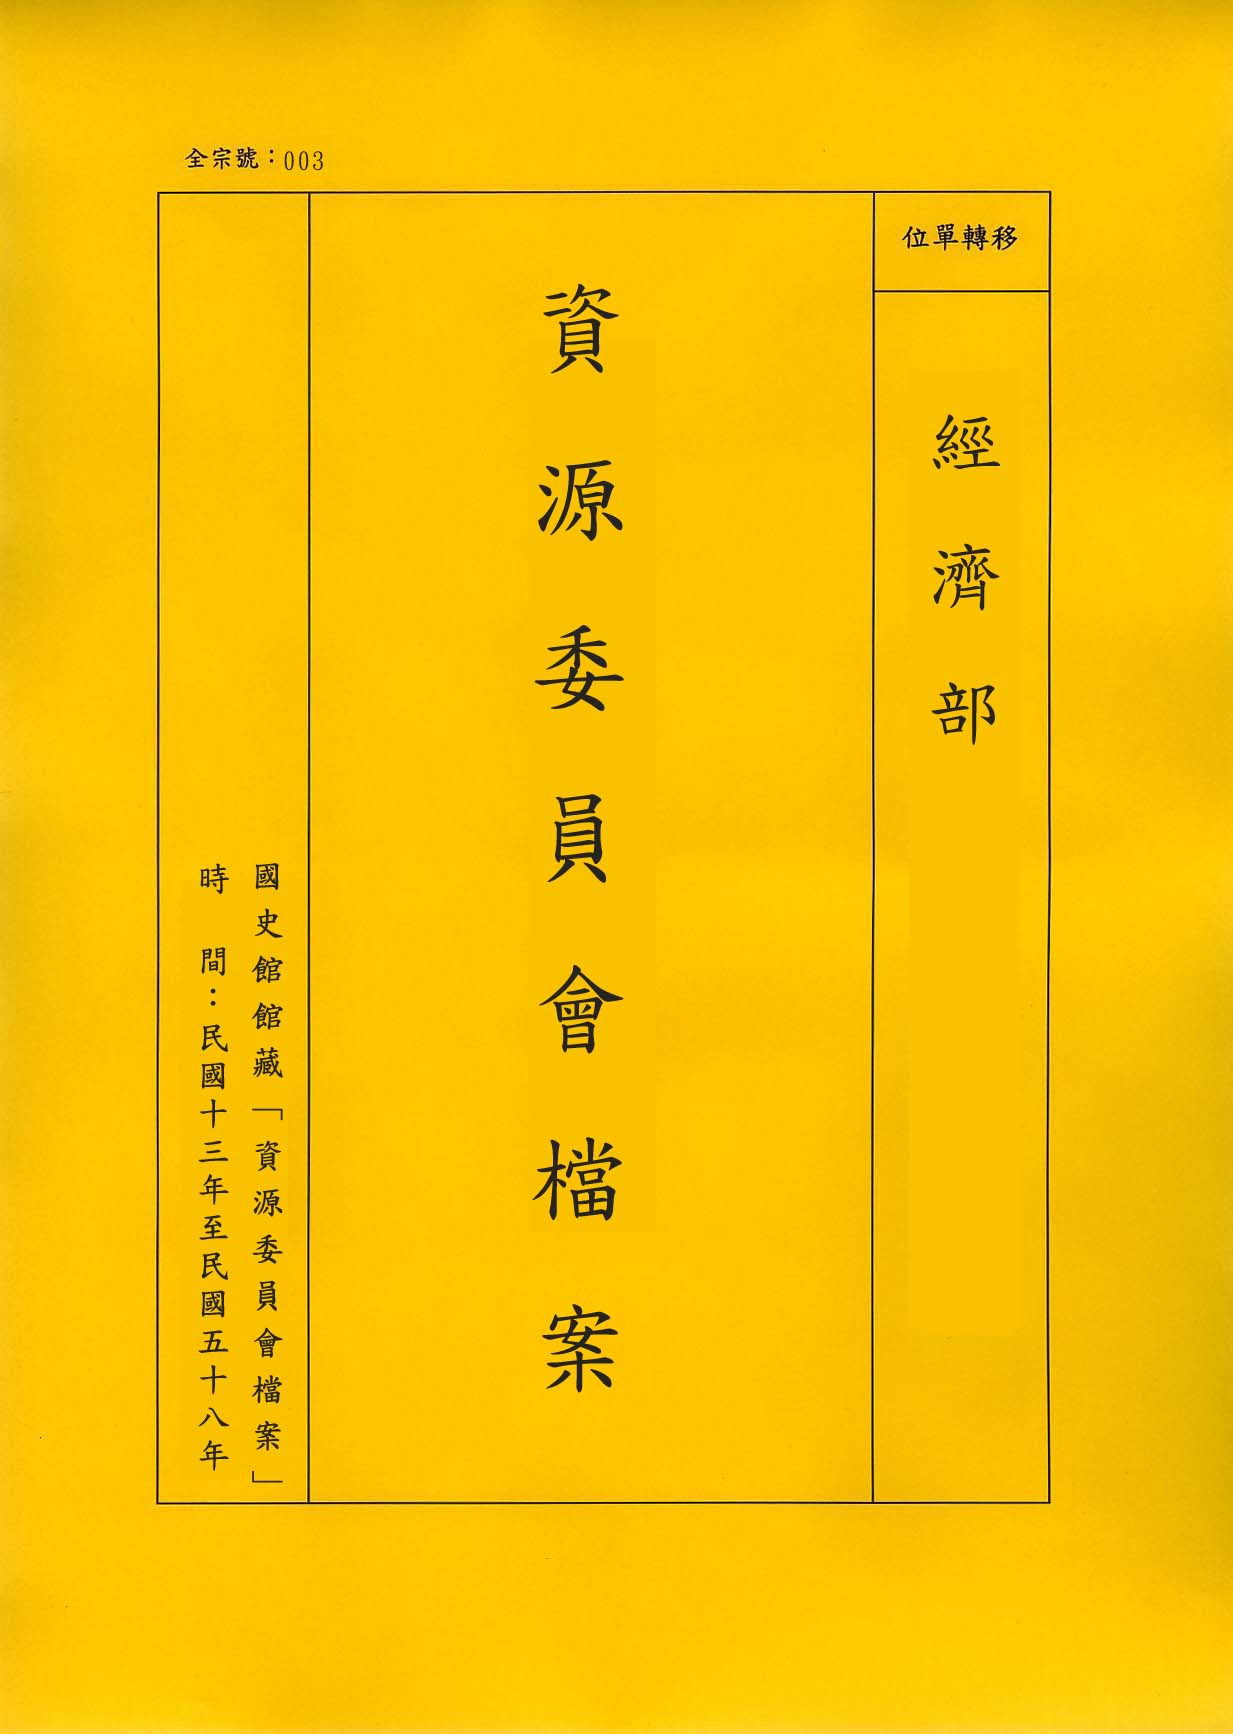 卷名:化學類工廠登記卡片─台灣(一)(003-010304-0262)